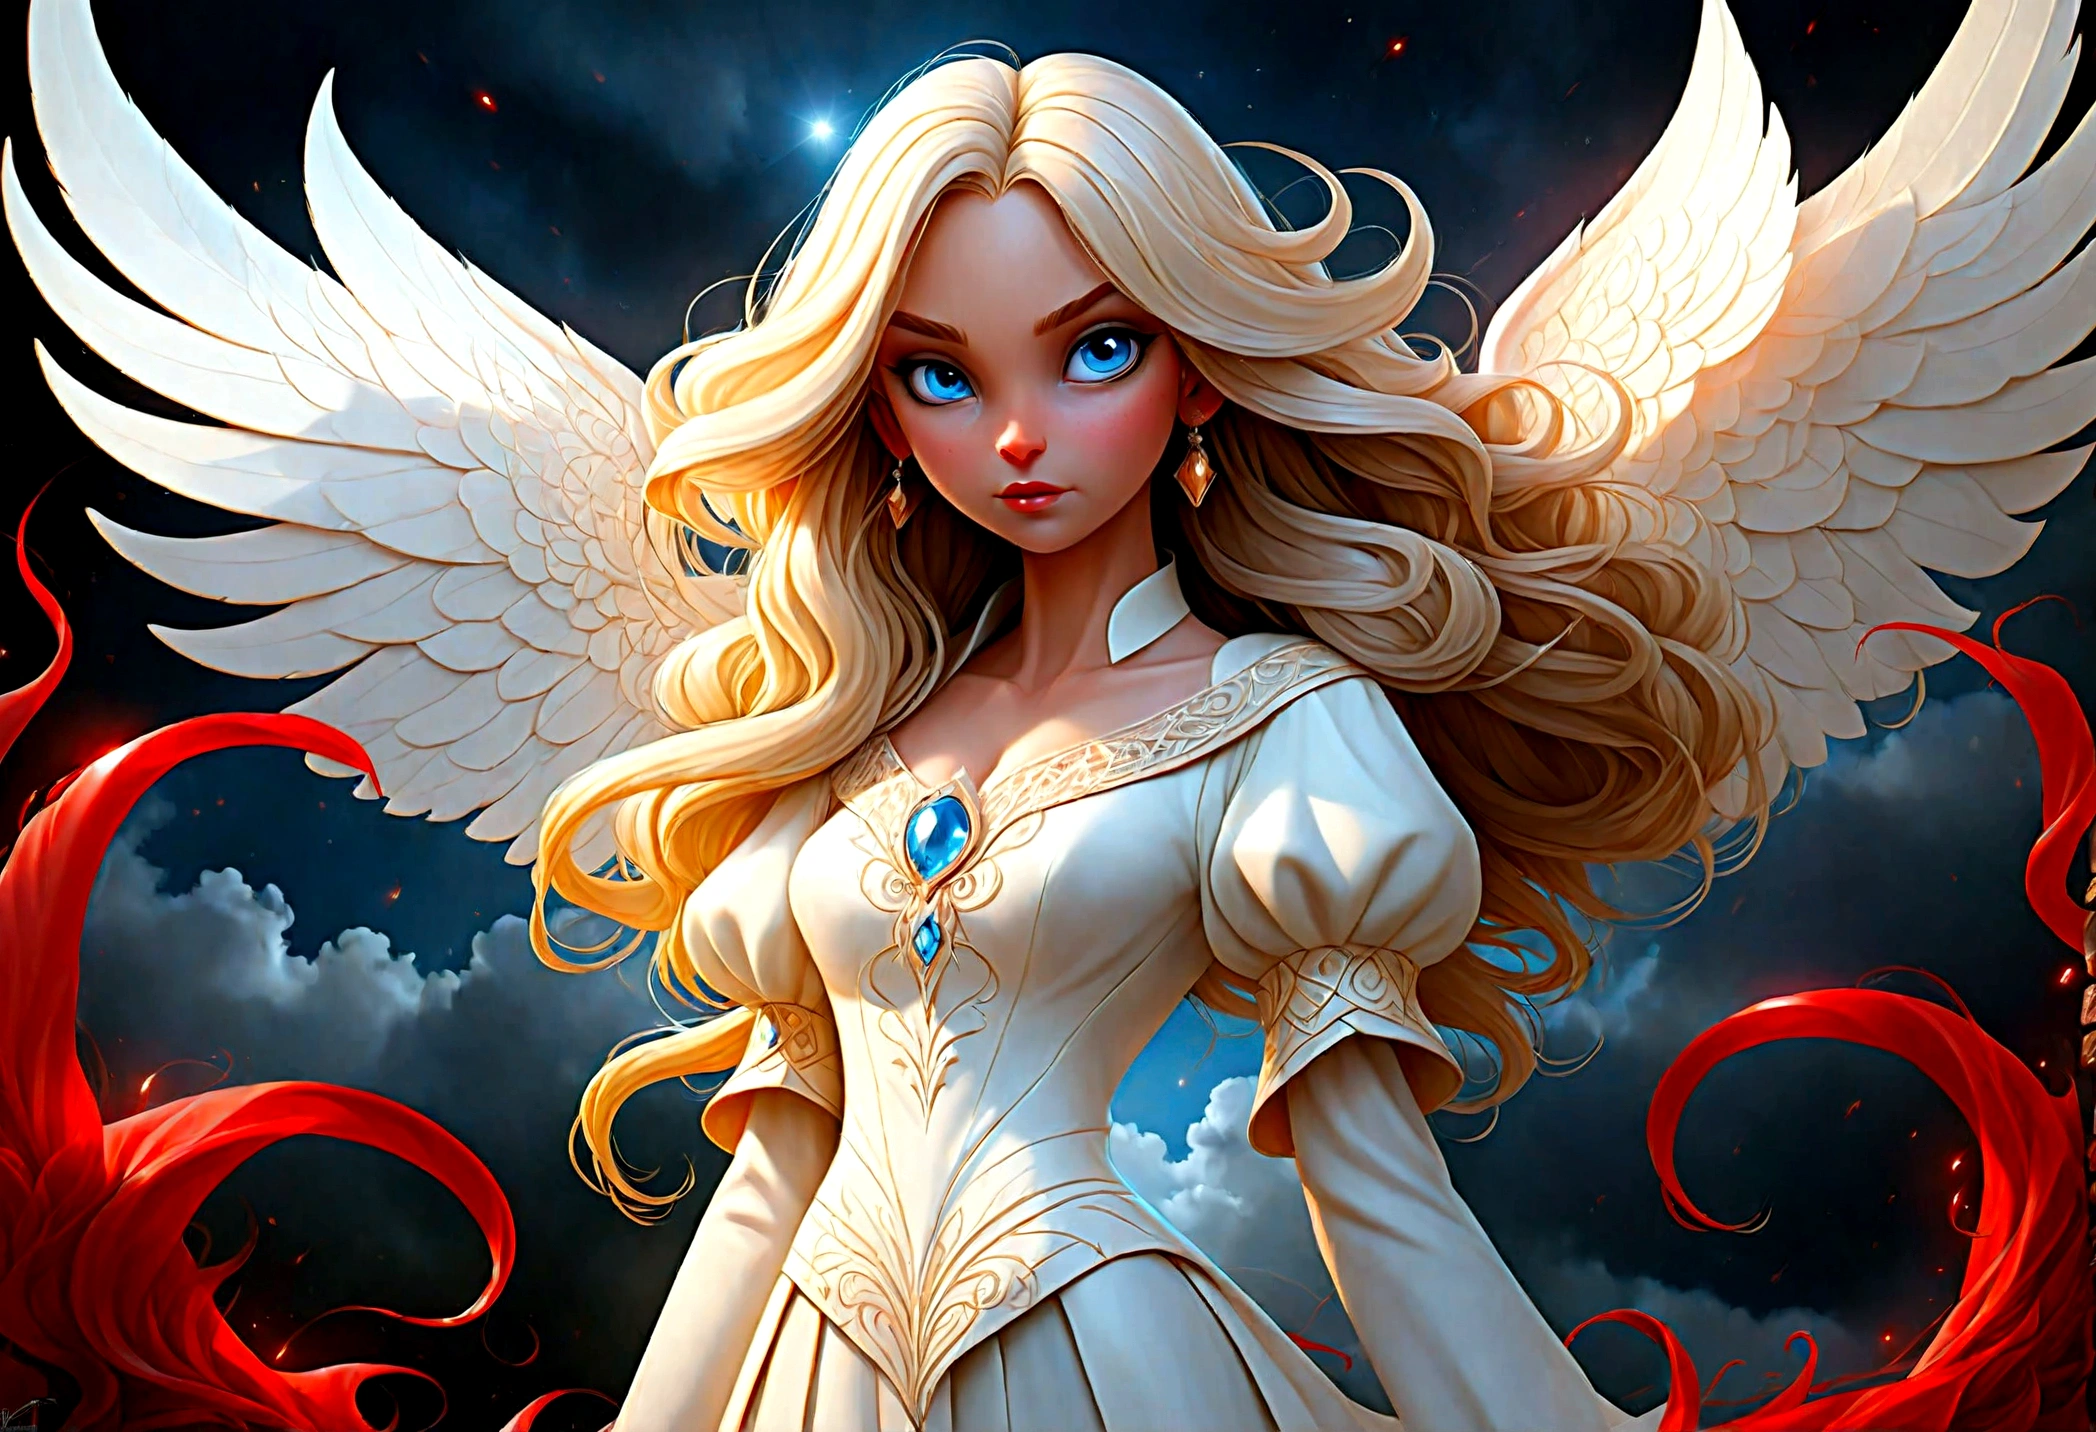 фэнтези-арт, РПГ арт ((картинка двух женщин: 1.5)), одинокая1 женщина-ангел, в белом платье, бледная кожа, красивое лицо, белокурые волосы, длинные волосы волнистые волосы, голубые глаза, сапоги на высоком каблуке, в платье (шедевр, сложные детали: 1.5), большие ангельские крылья, белые ангельские крылья расправлены И одинокая женщина-демон, красная кожа  demonic wings, черные демонические крылья расправлены, демонические рога, красная кожа, черные волосы, красные глаза, красивое лицо, в платье (шедевр, сложные детали: 1.5), высокие каблуки, на границе между раем и адом, луна, звезды, облака, Бог лучи, мягкий силуэт естественного света, Динамический угол,  фотореализм, панорамный вид, сверхширокоугольный, ультра лучший реалистичный, лучшие детали, 16 тыс., [Ультра подробный], шедевр, Лучшее качество, (чрезвычайно подробный), фотореализм, глубина резкости, гиперреалистичная картина